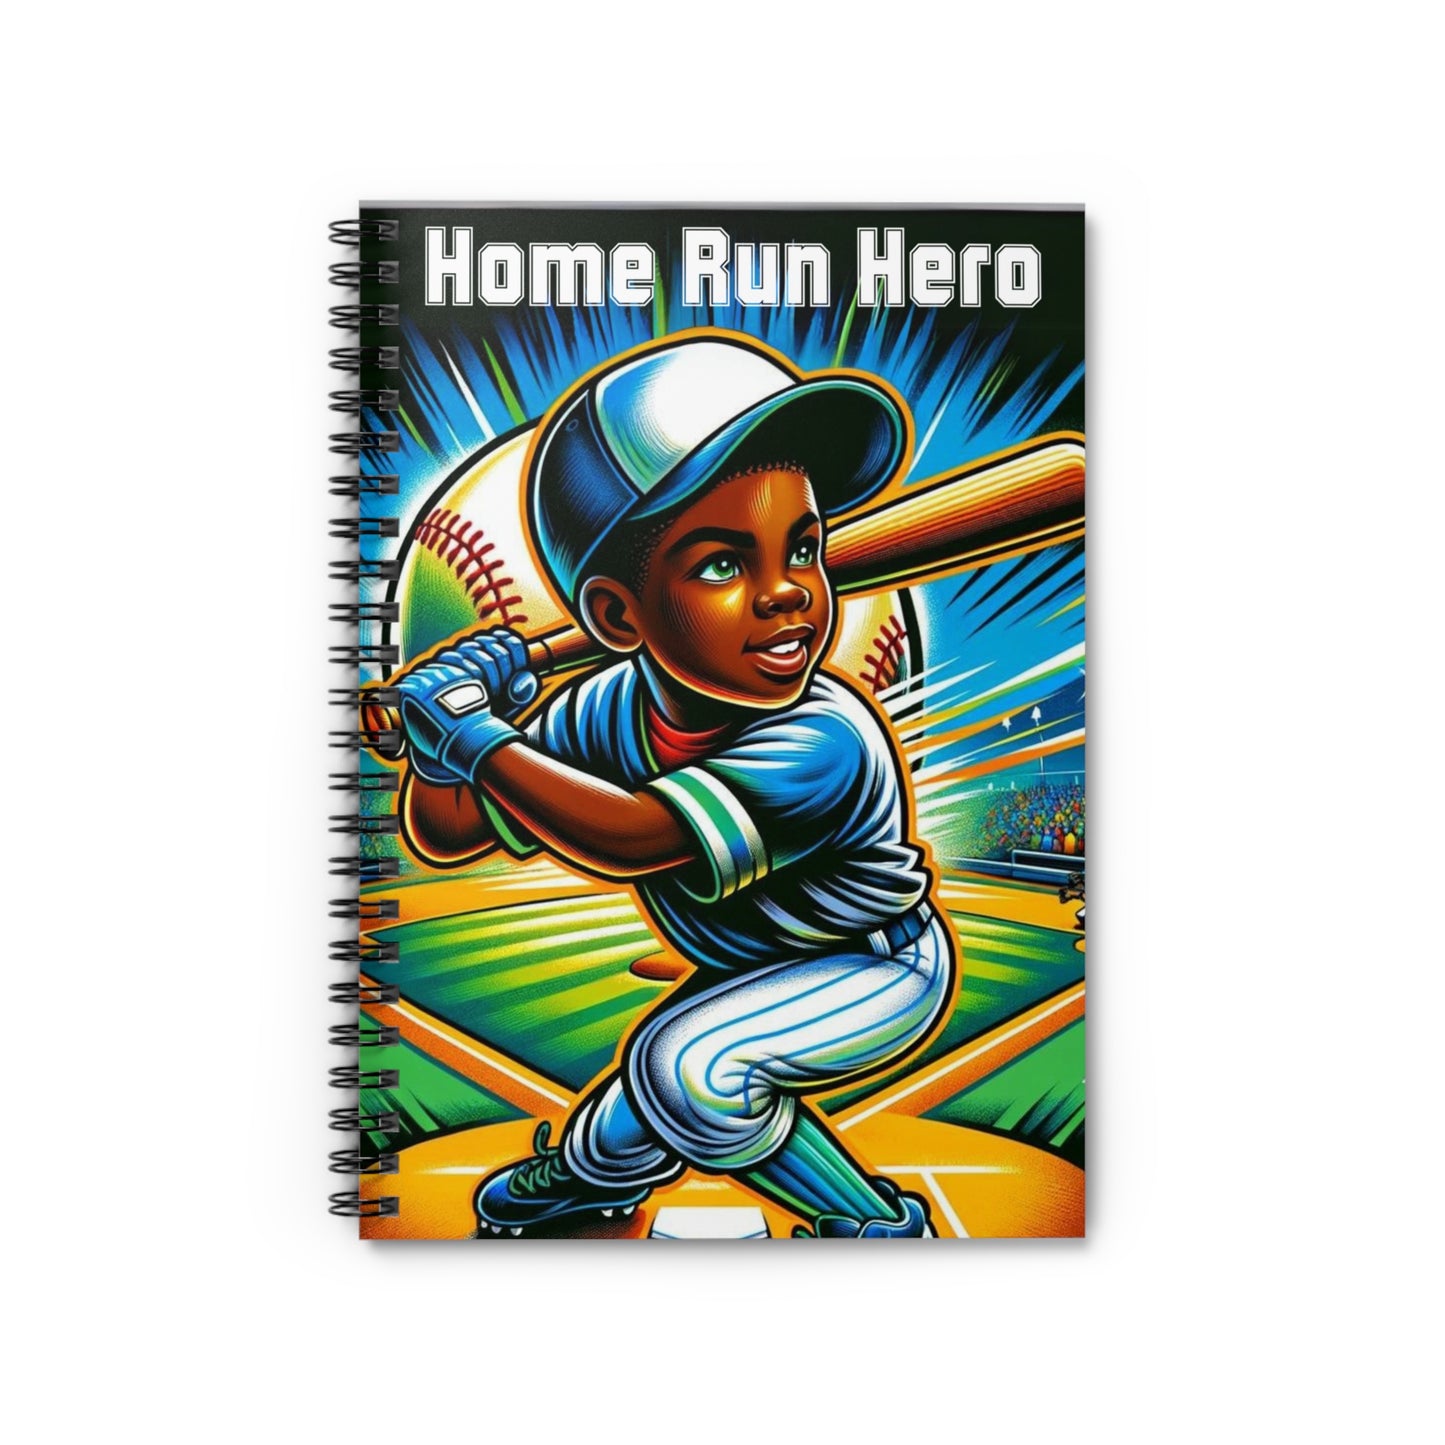 Home Run Hero Spiral Notebook - Ruled Line, Joyous Life Journals